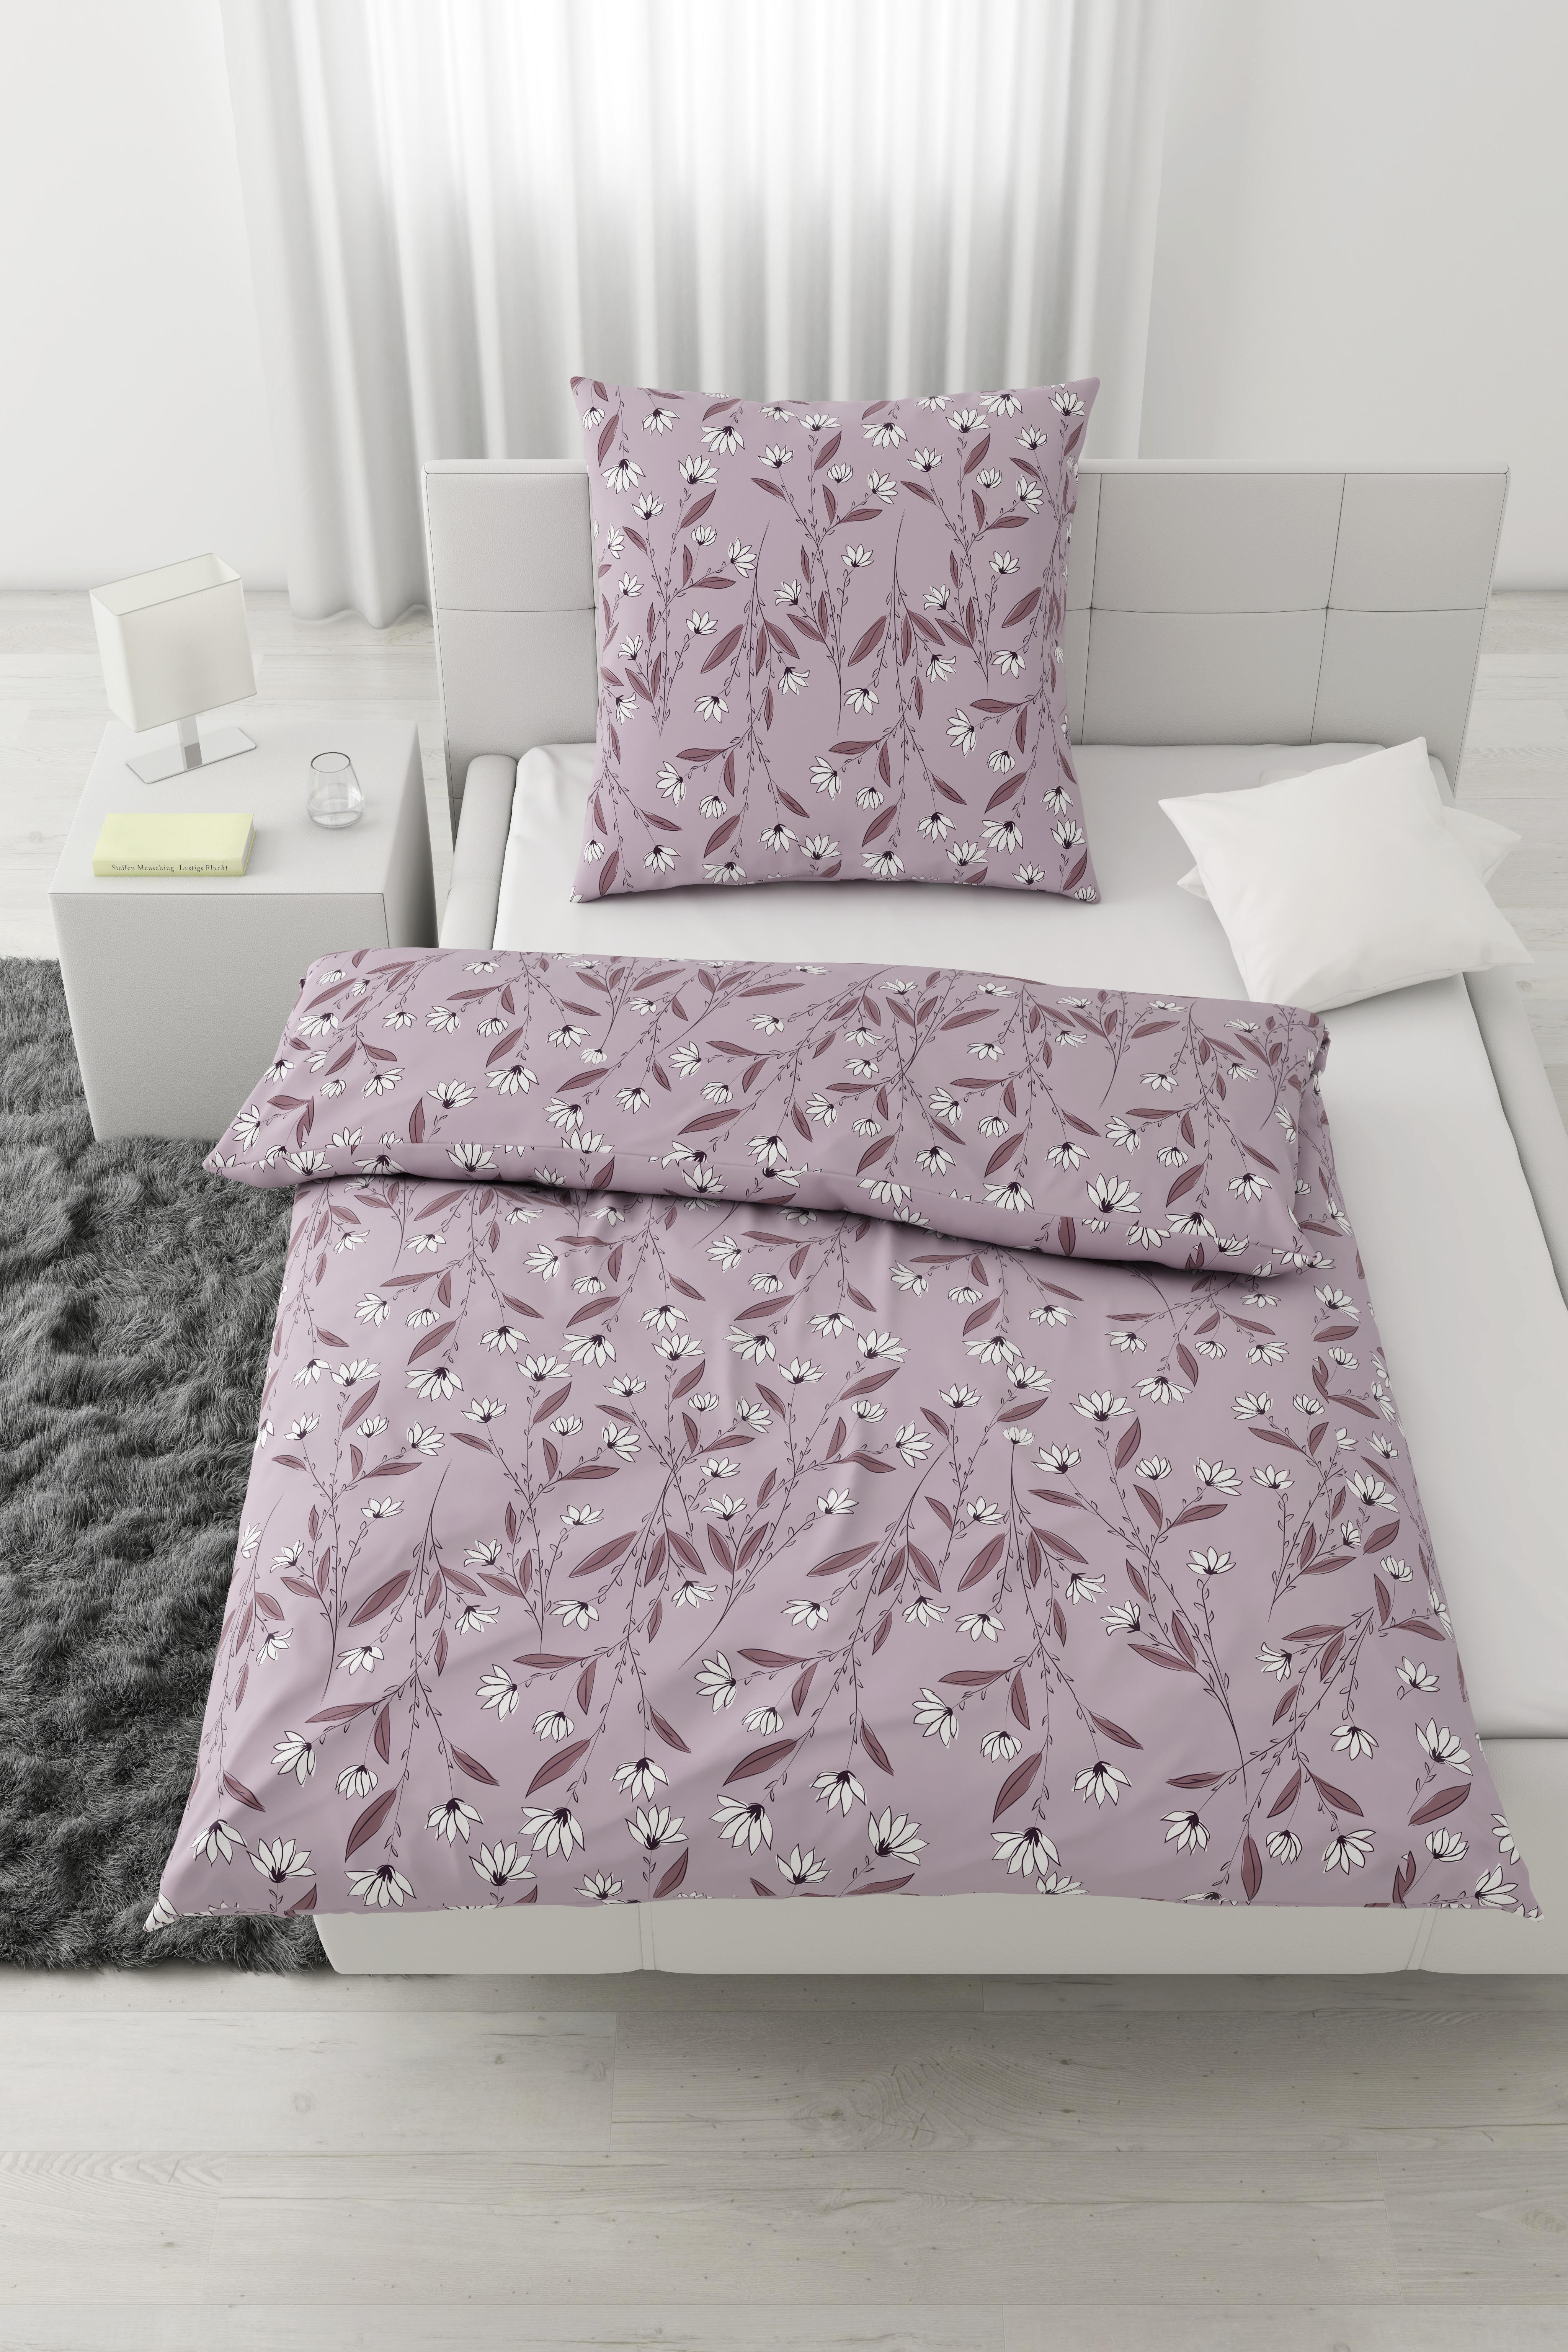 Bettwäsche Summerend ca. 135x200cm - Violett, ROMANTIK / LANDHAUS, Textil (135/200cm) - Modern Living